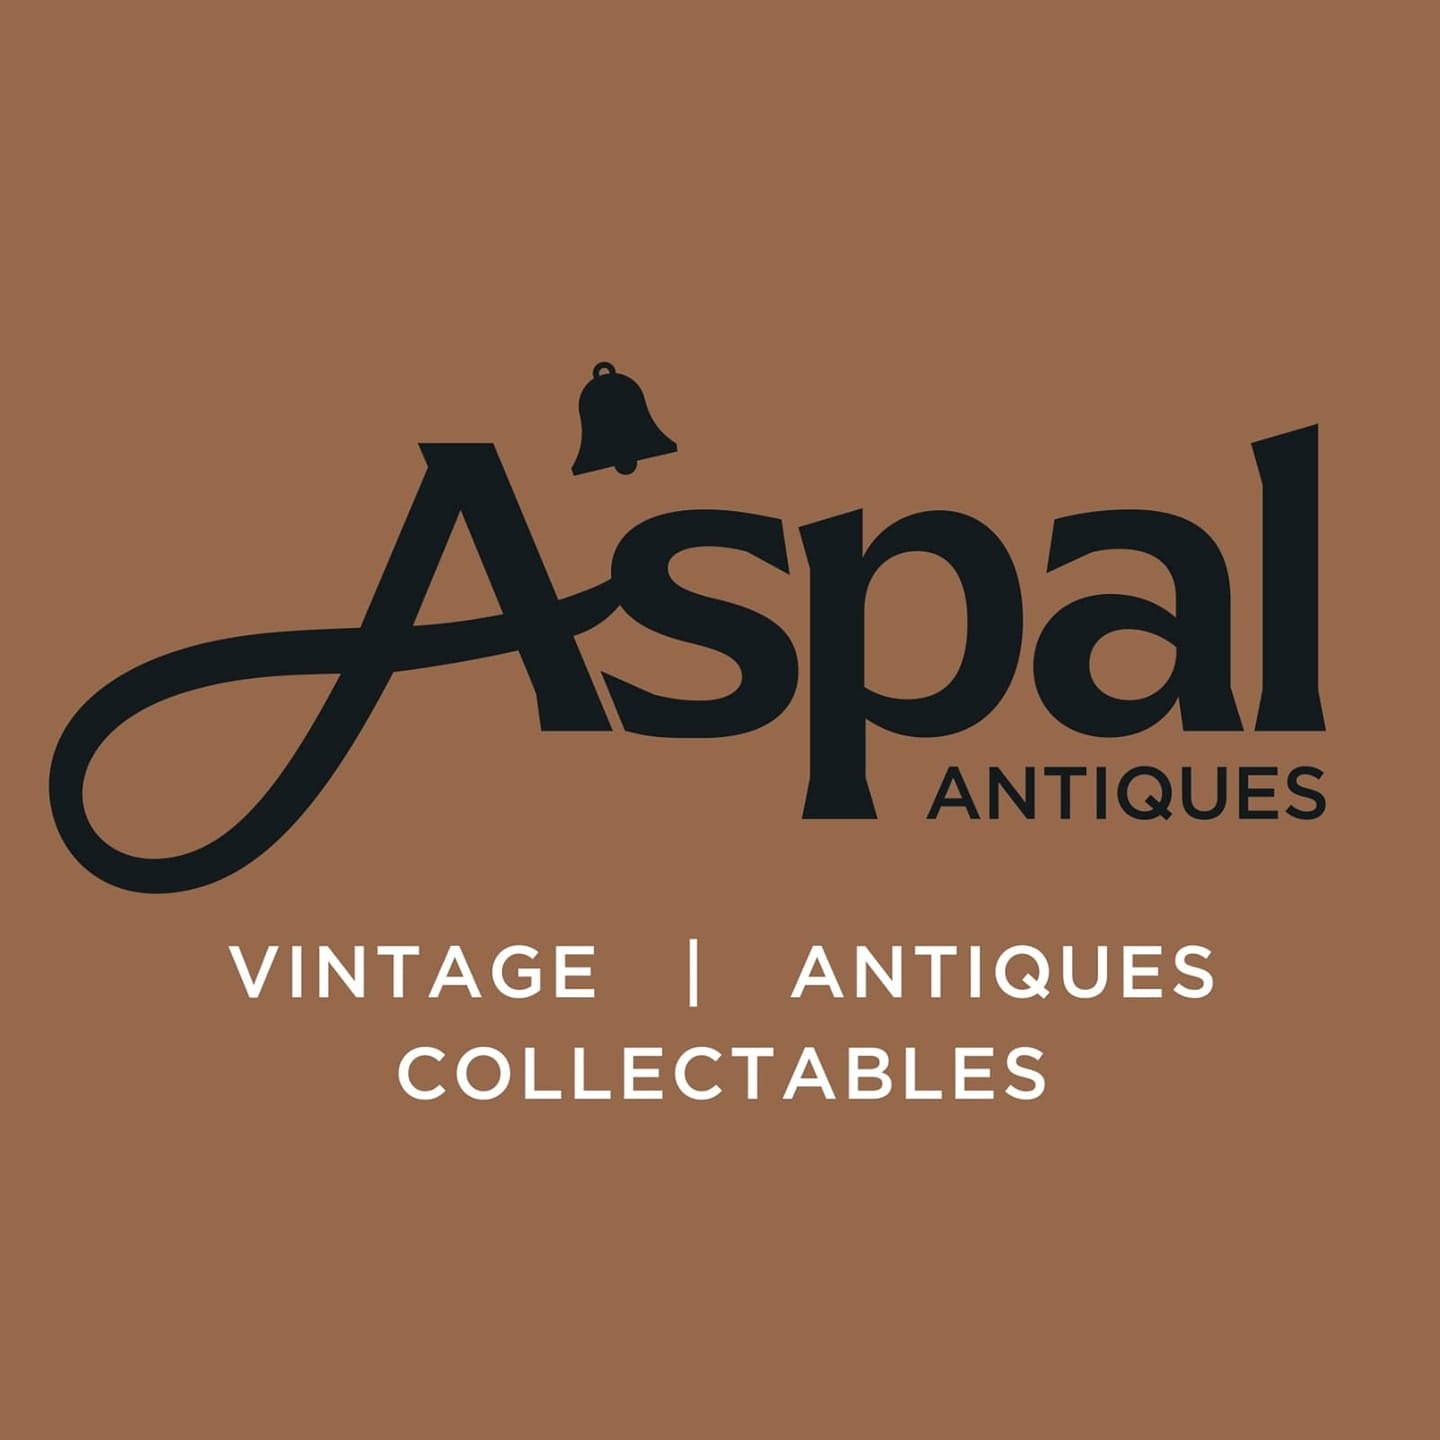 Aspal Antiques - Vintage | Antiques | Collectables